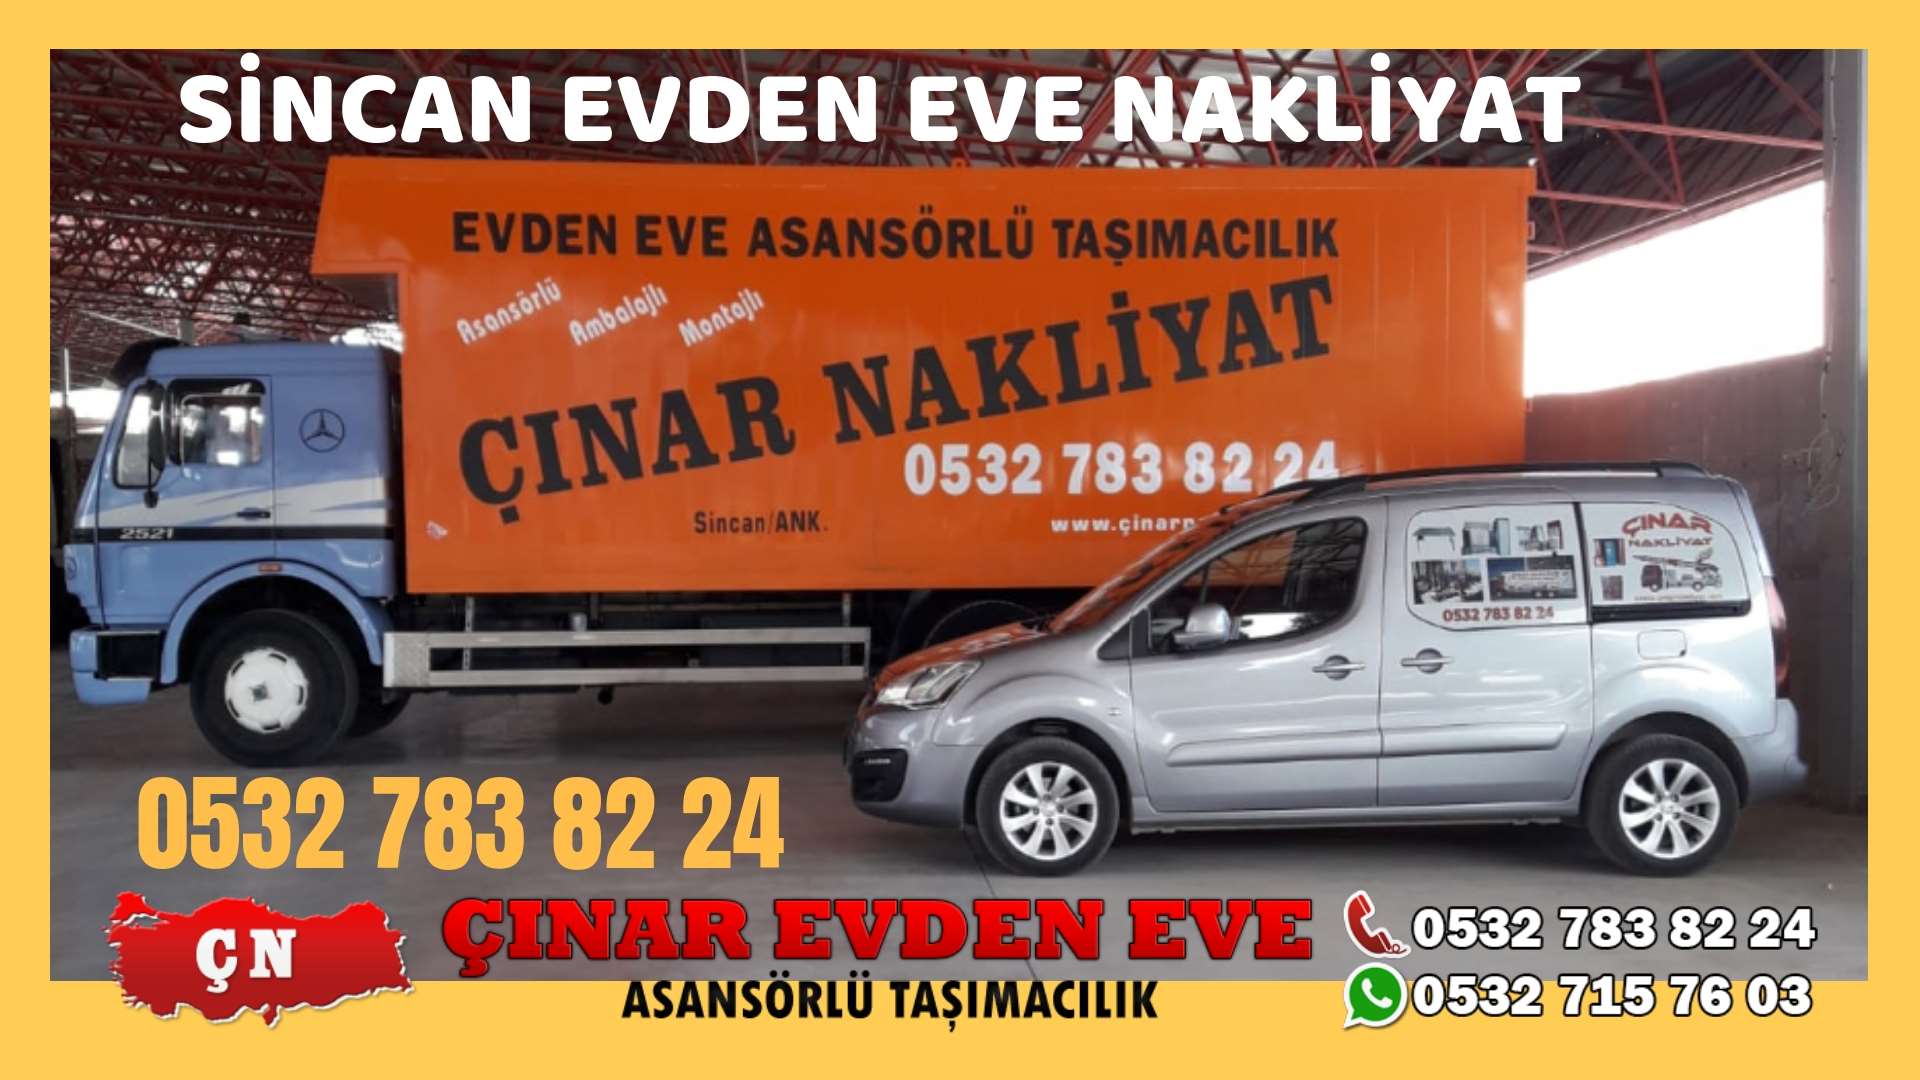 Ankara Mamak Evden eve ev taşıma sincan nakliye fiyatları 0532 715 76 03